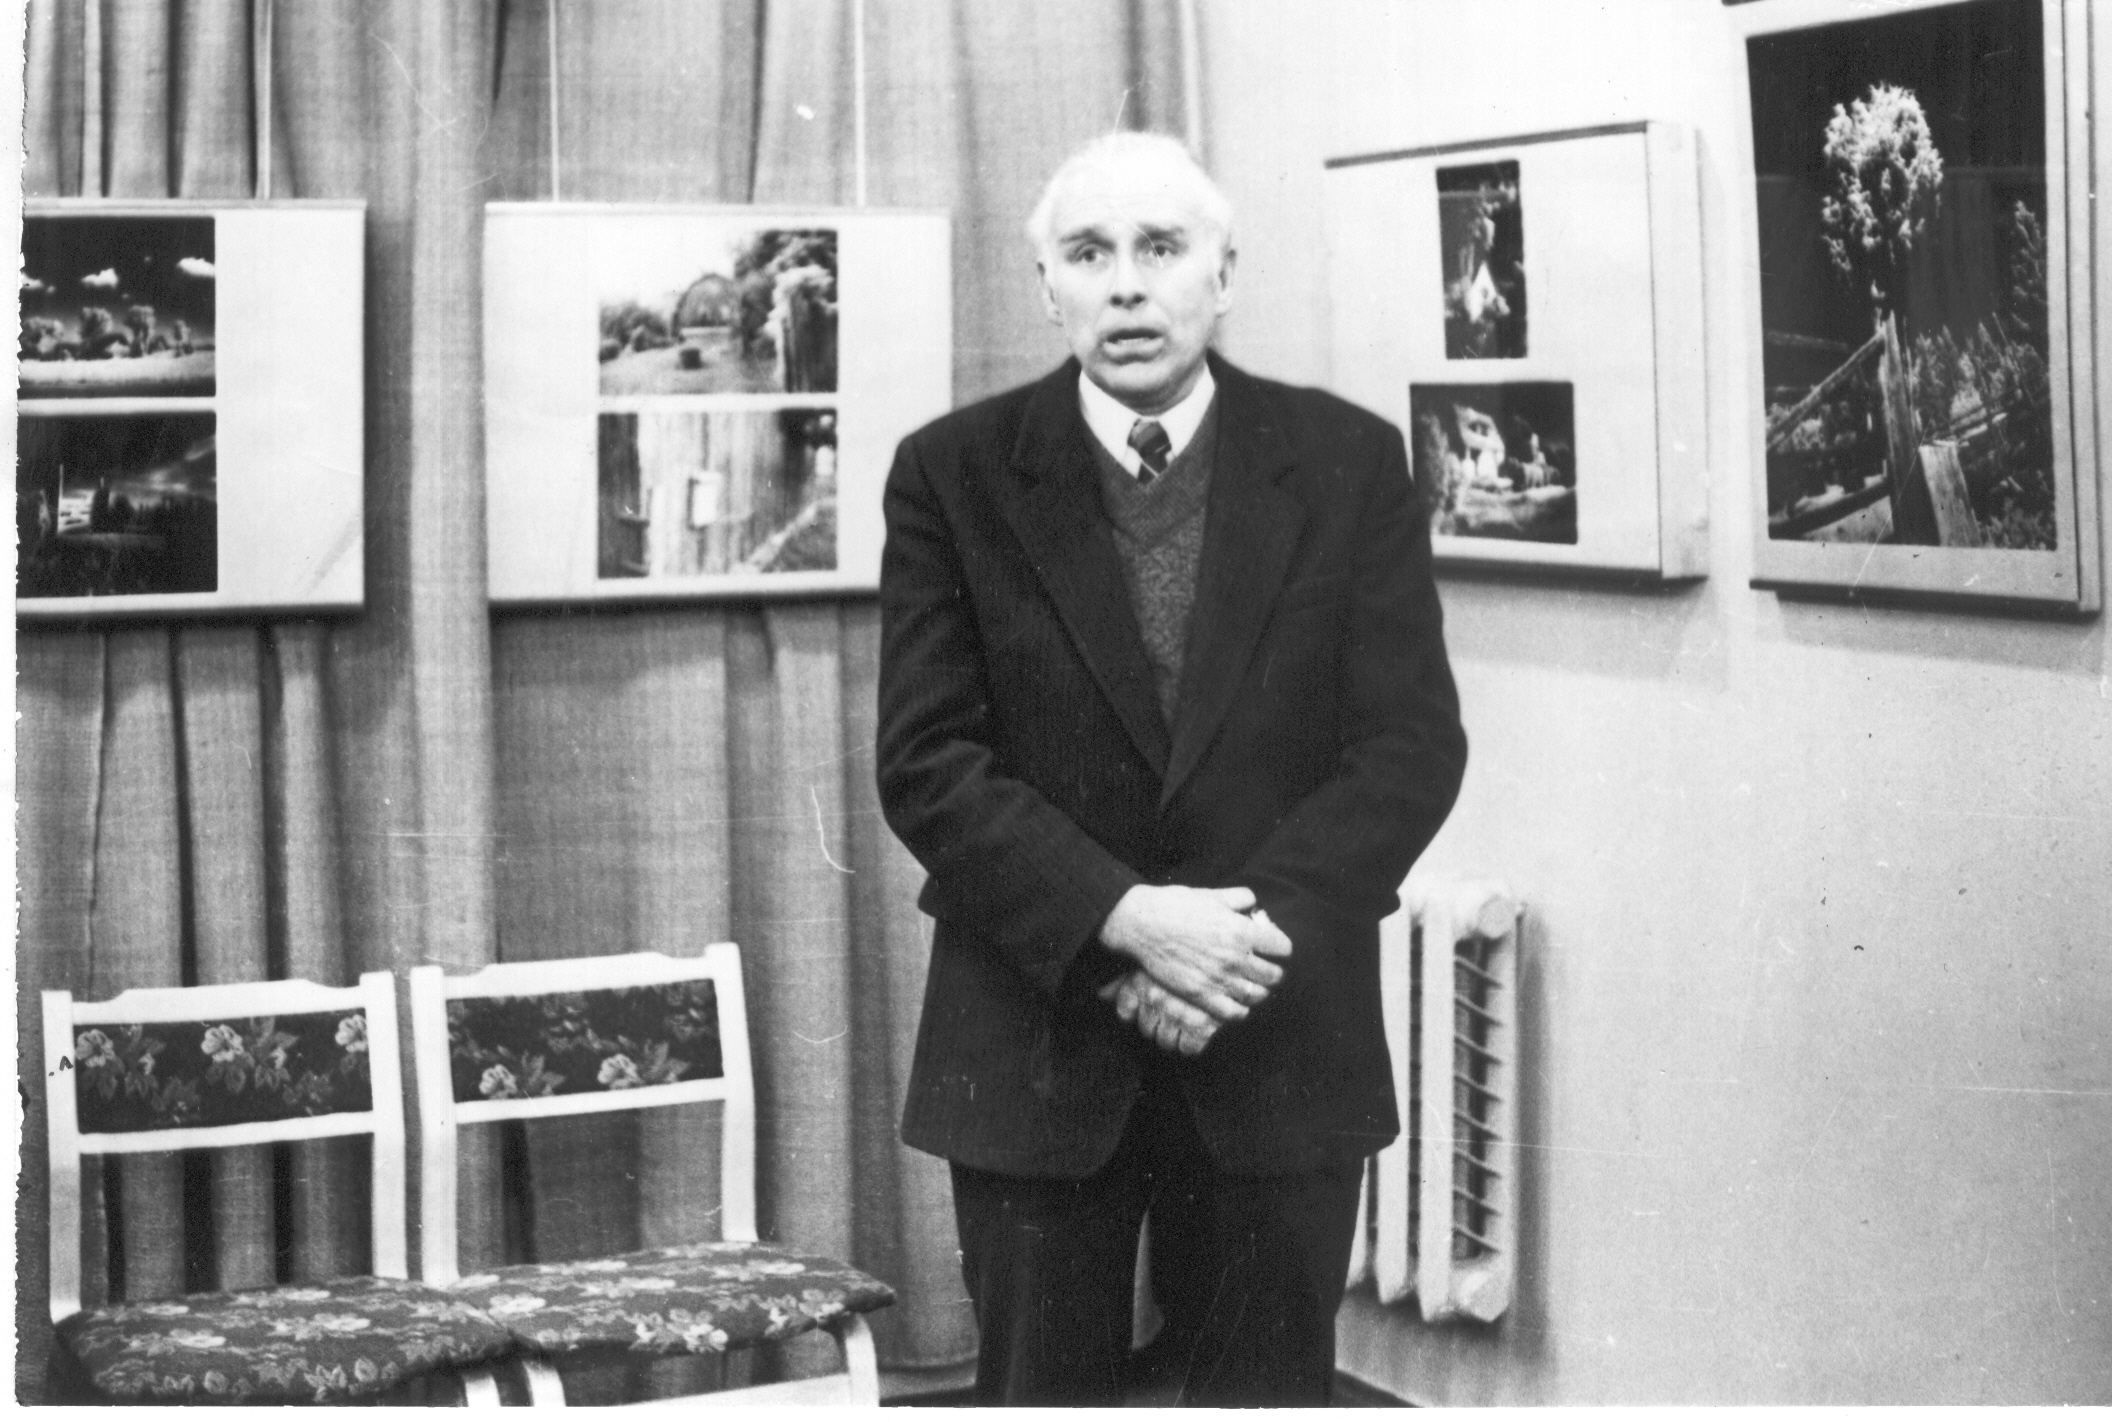 Foto.Võru  Koduloomuuseumi  ekspositsiooni avamise aktus 7.veebruaril 1985.a Kõneleb Fr.R.Kreutzwaldi Memoriaalmuuseumi direktor Aleksander Krull